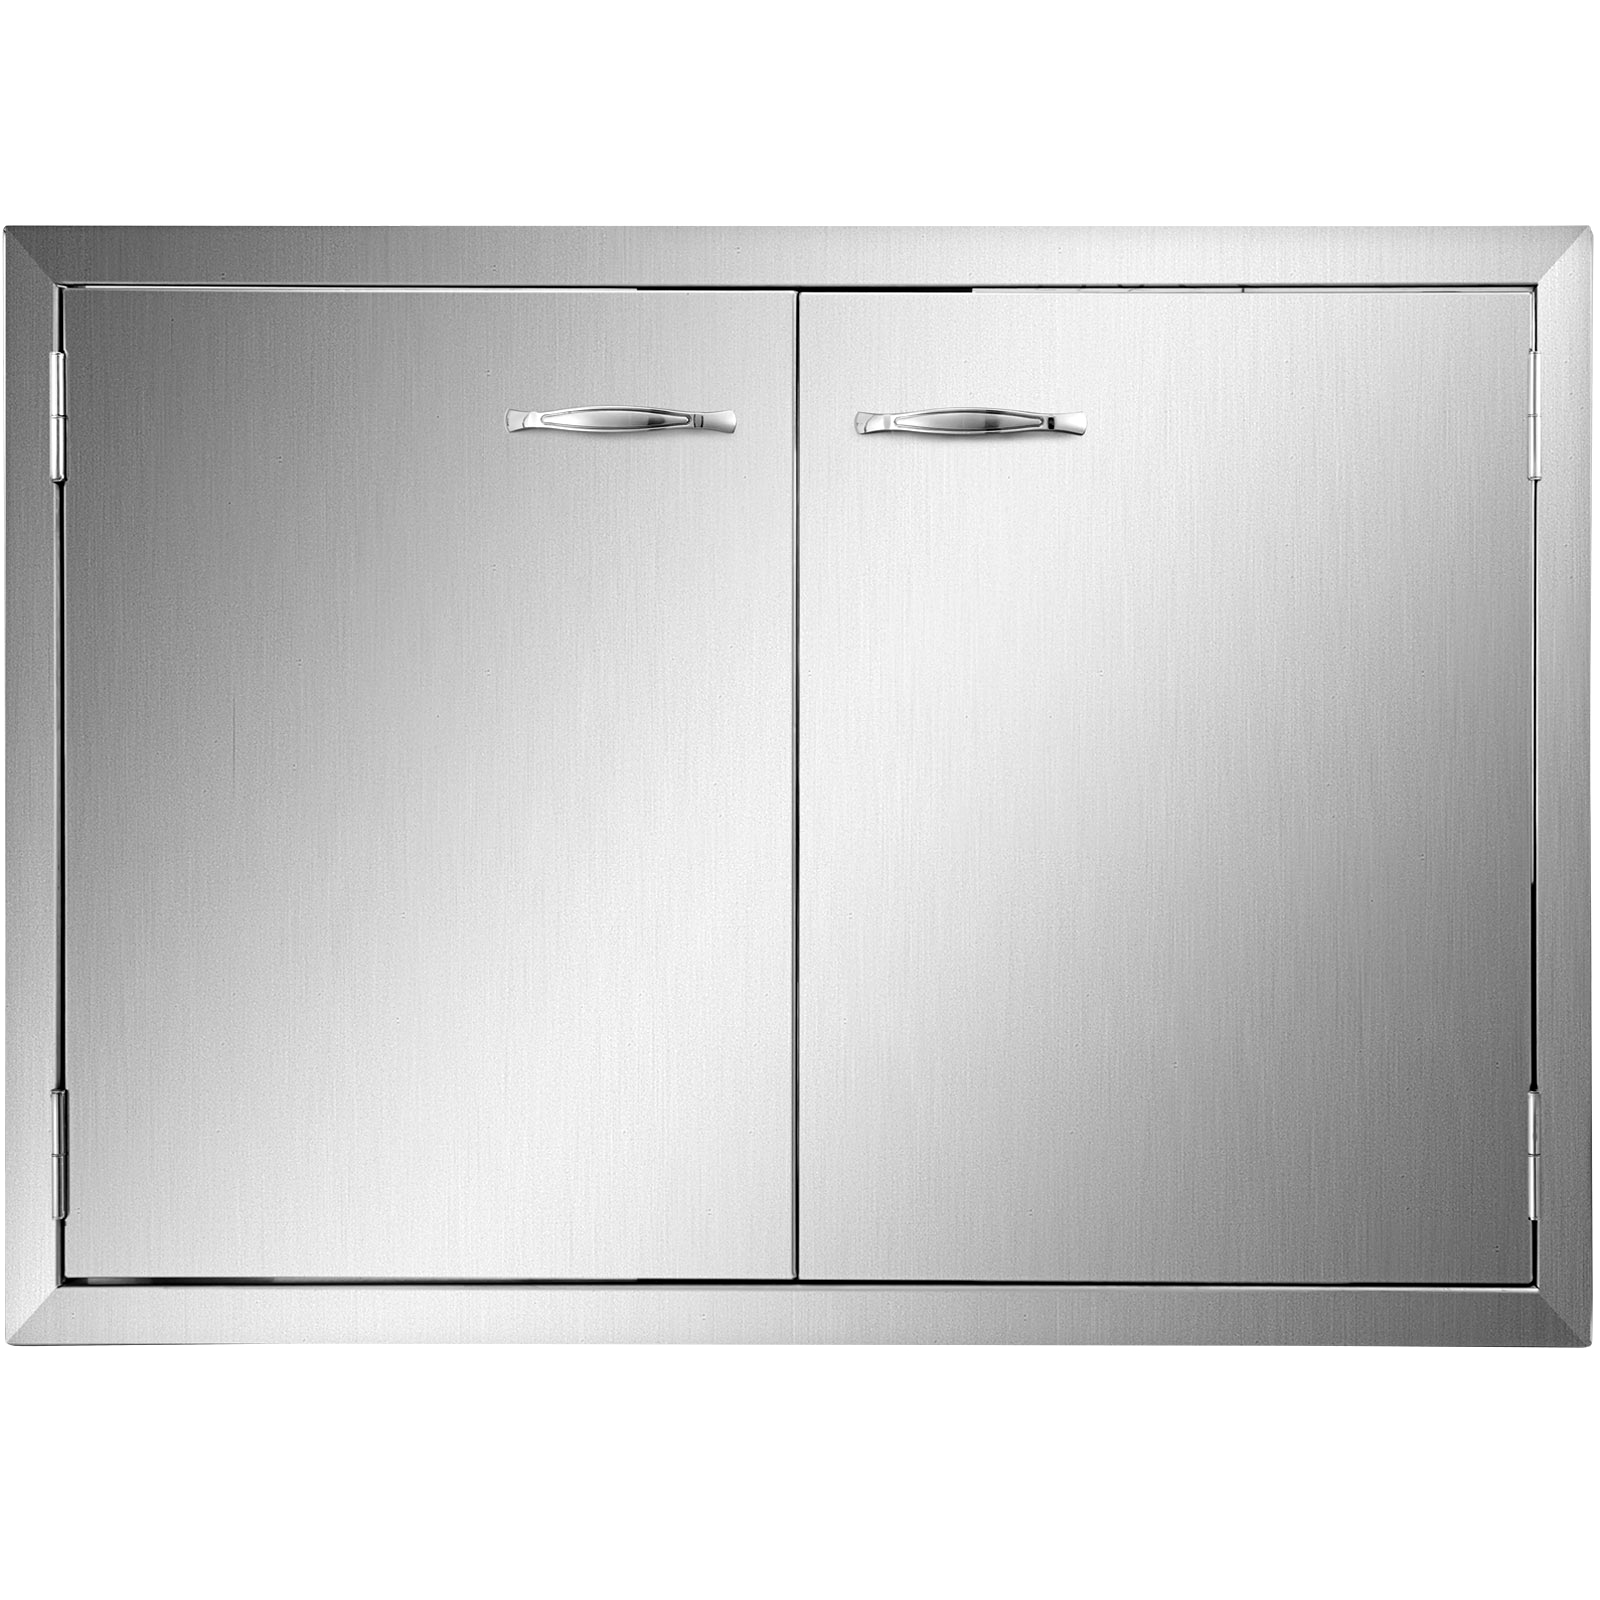 outdoor kitchen doors, stainless steel, 24x26 inch